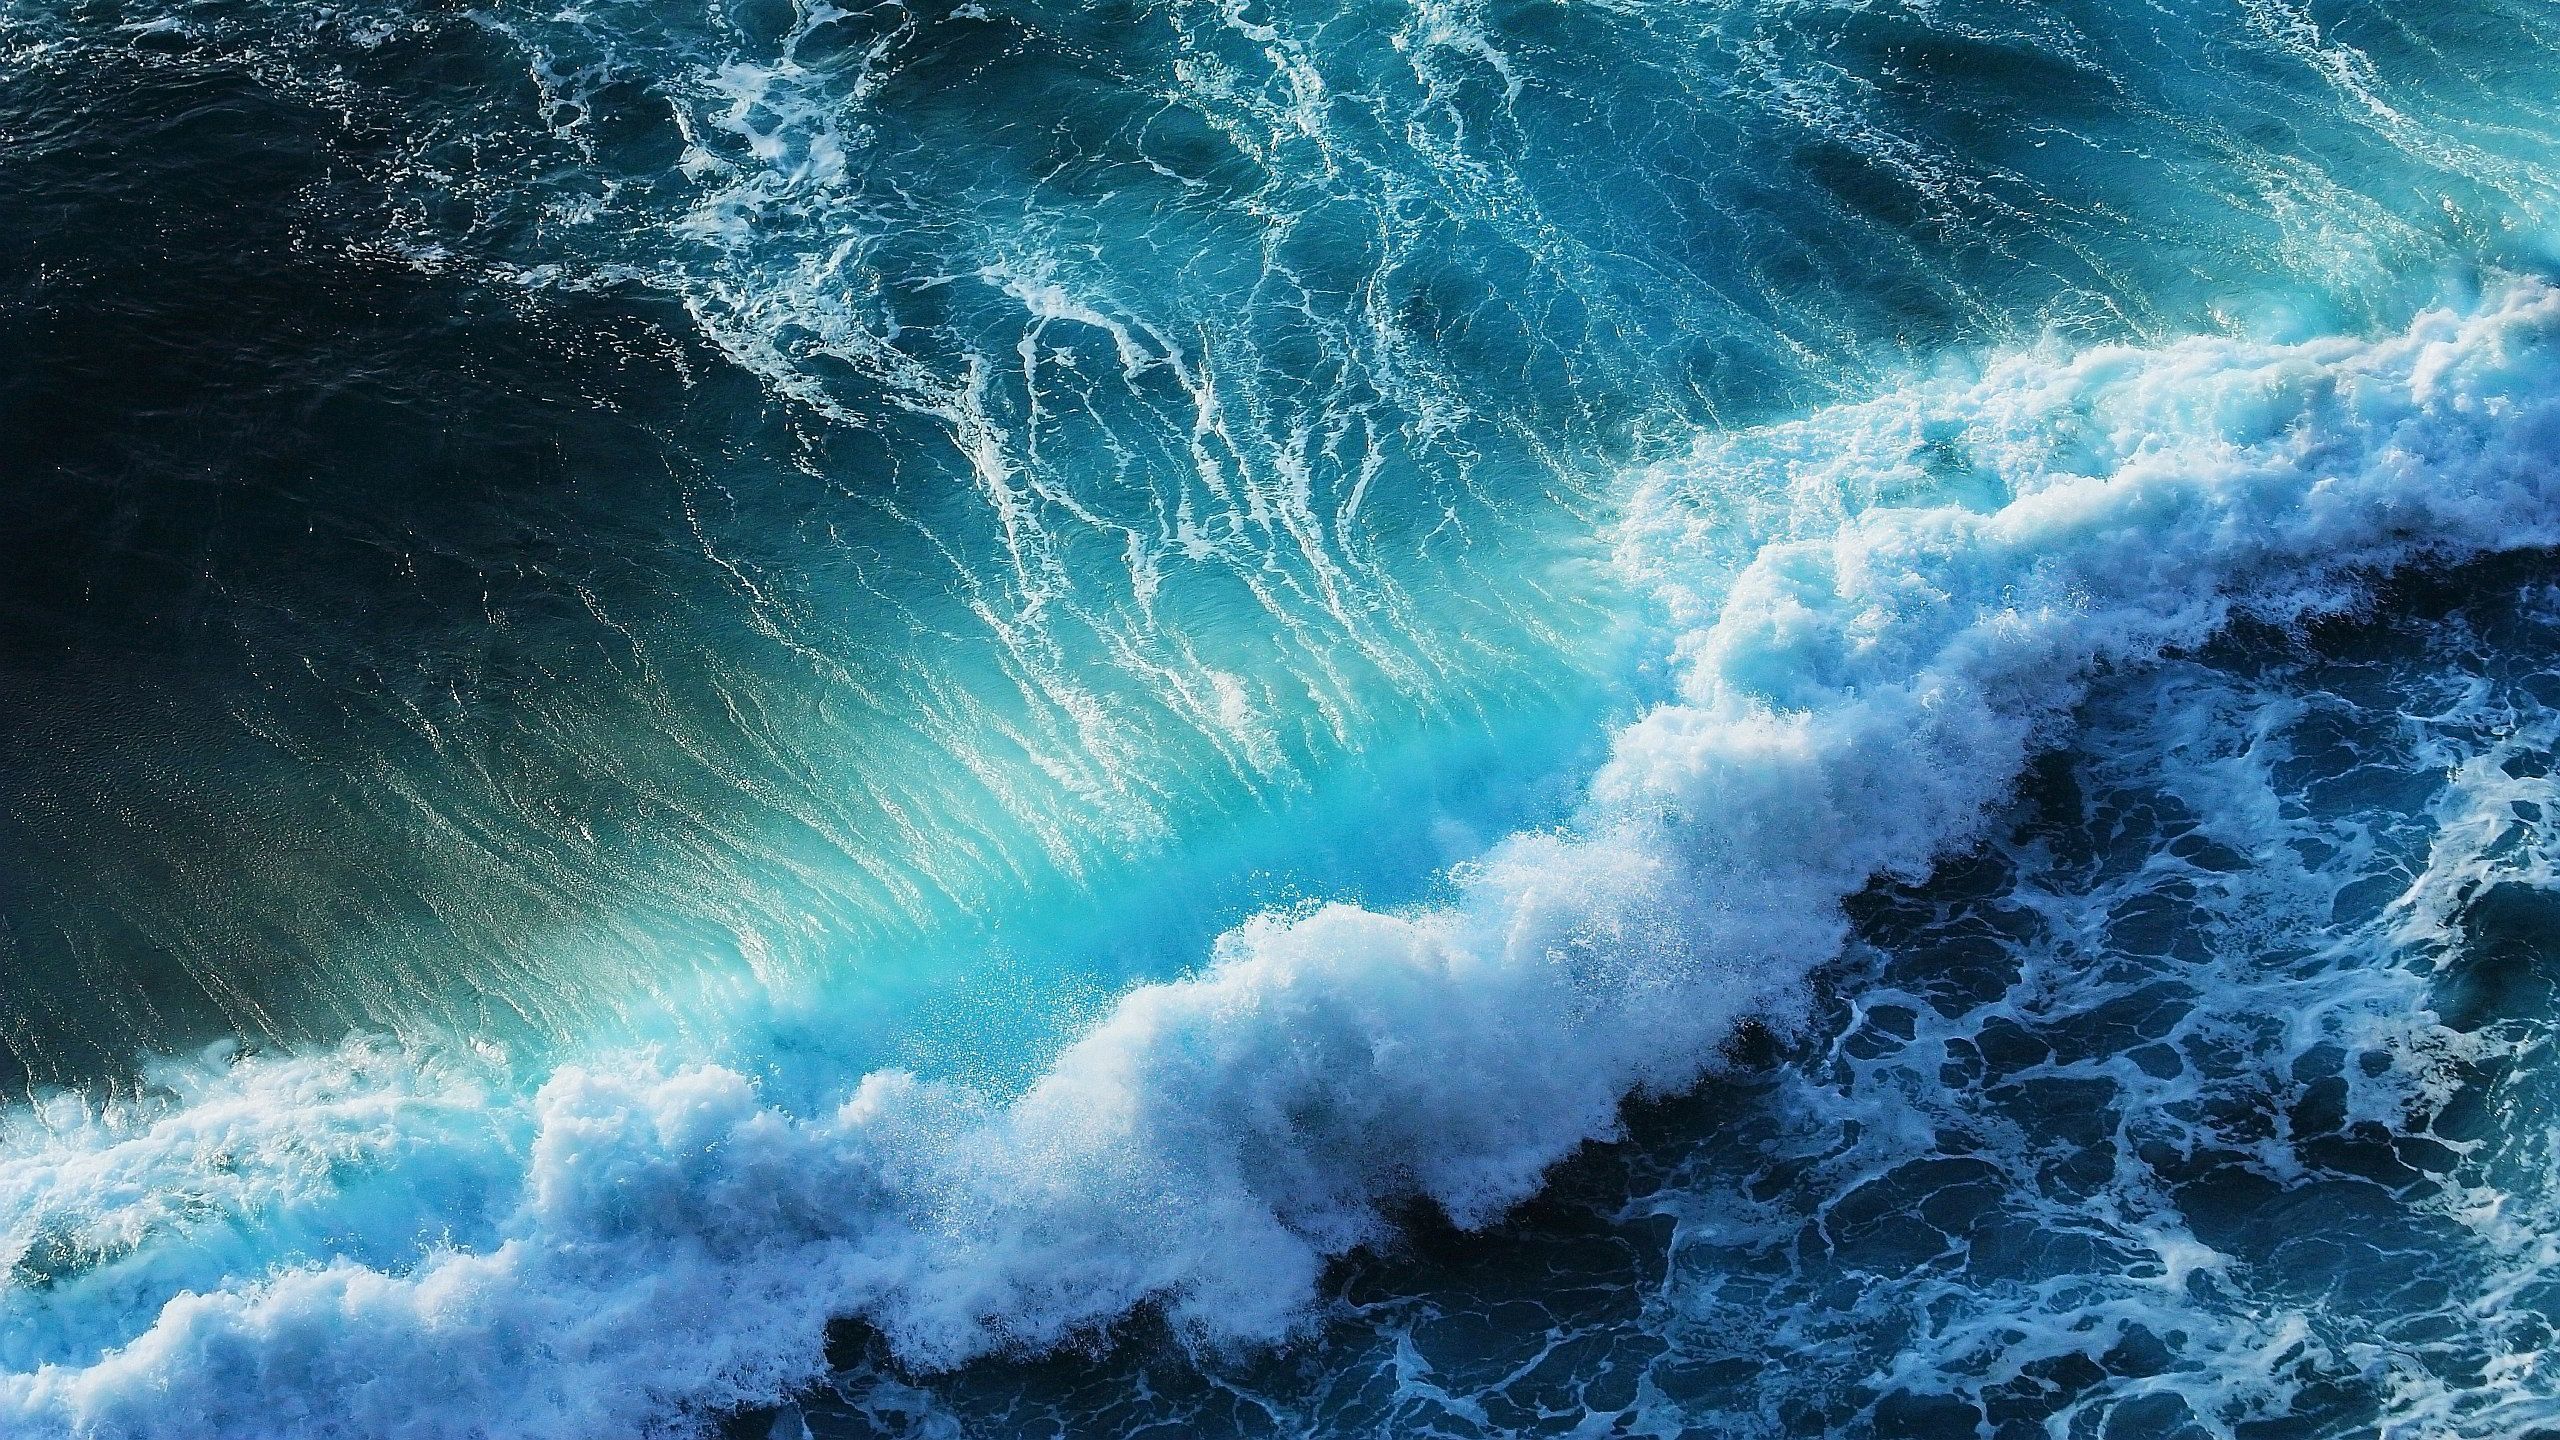 Sea wave Wallpaper. #RockxOnTour. Wallpaper